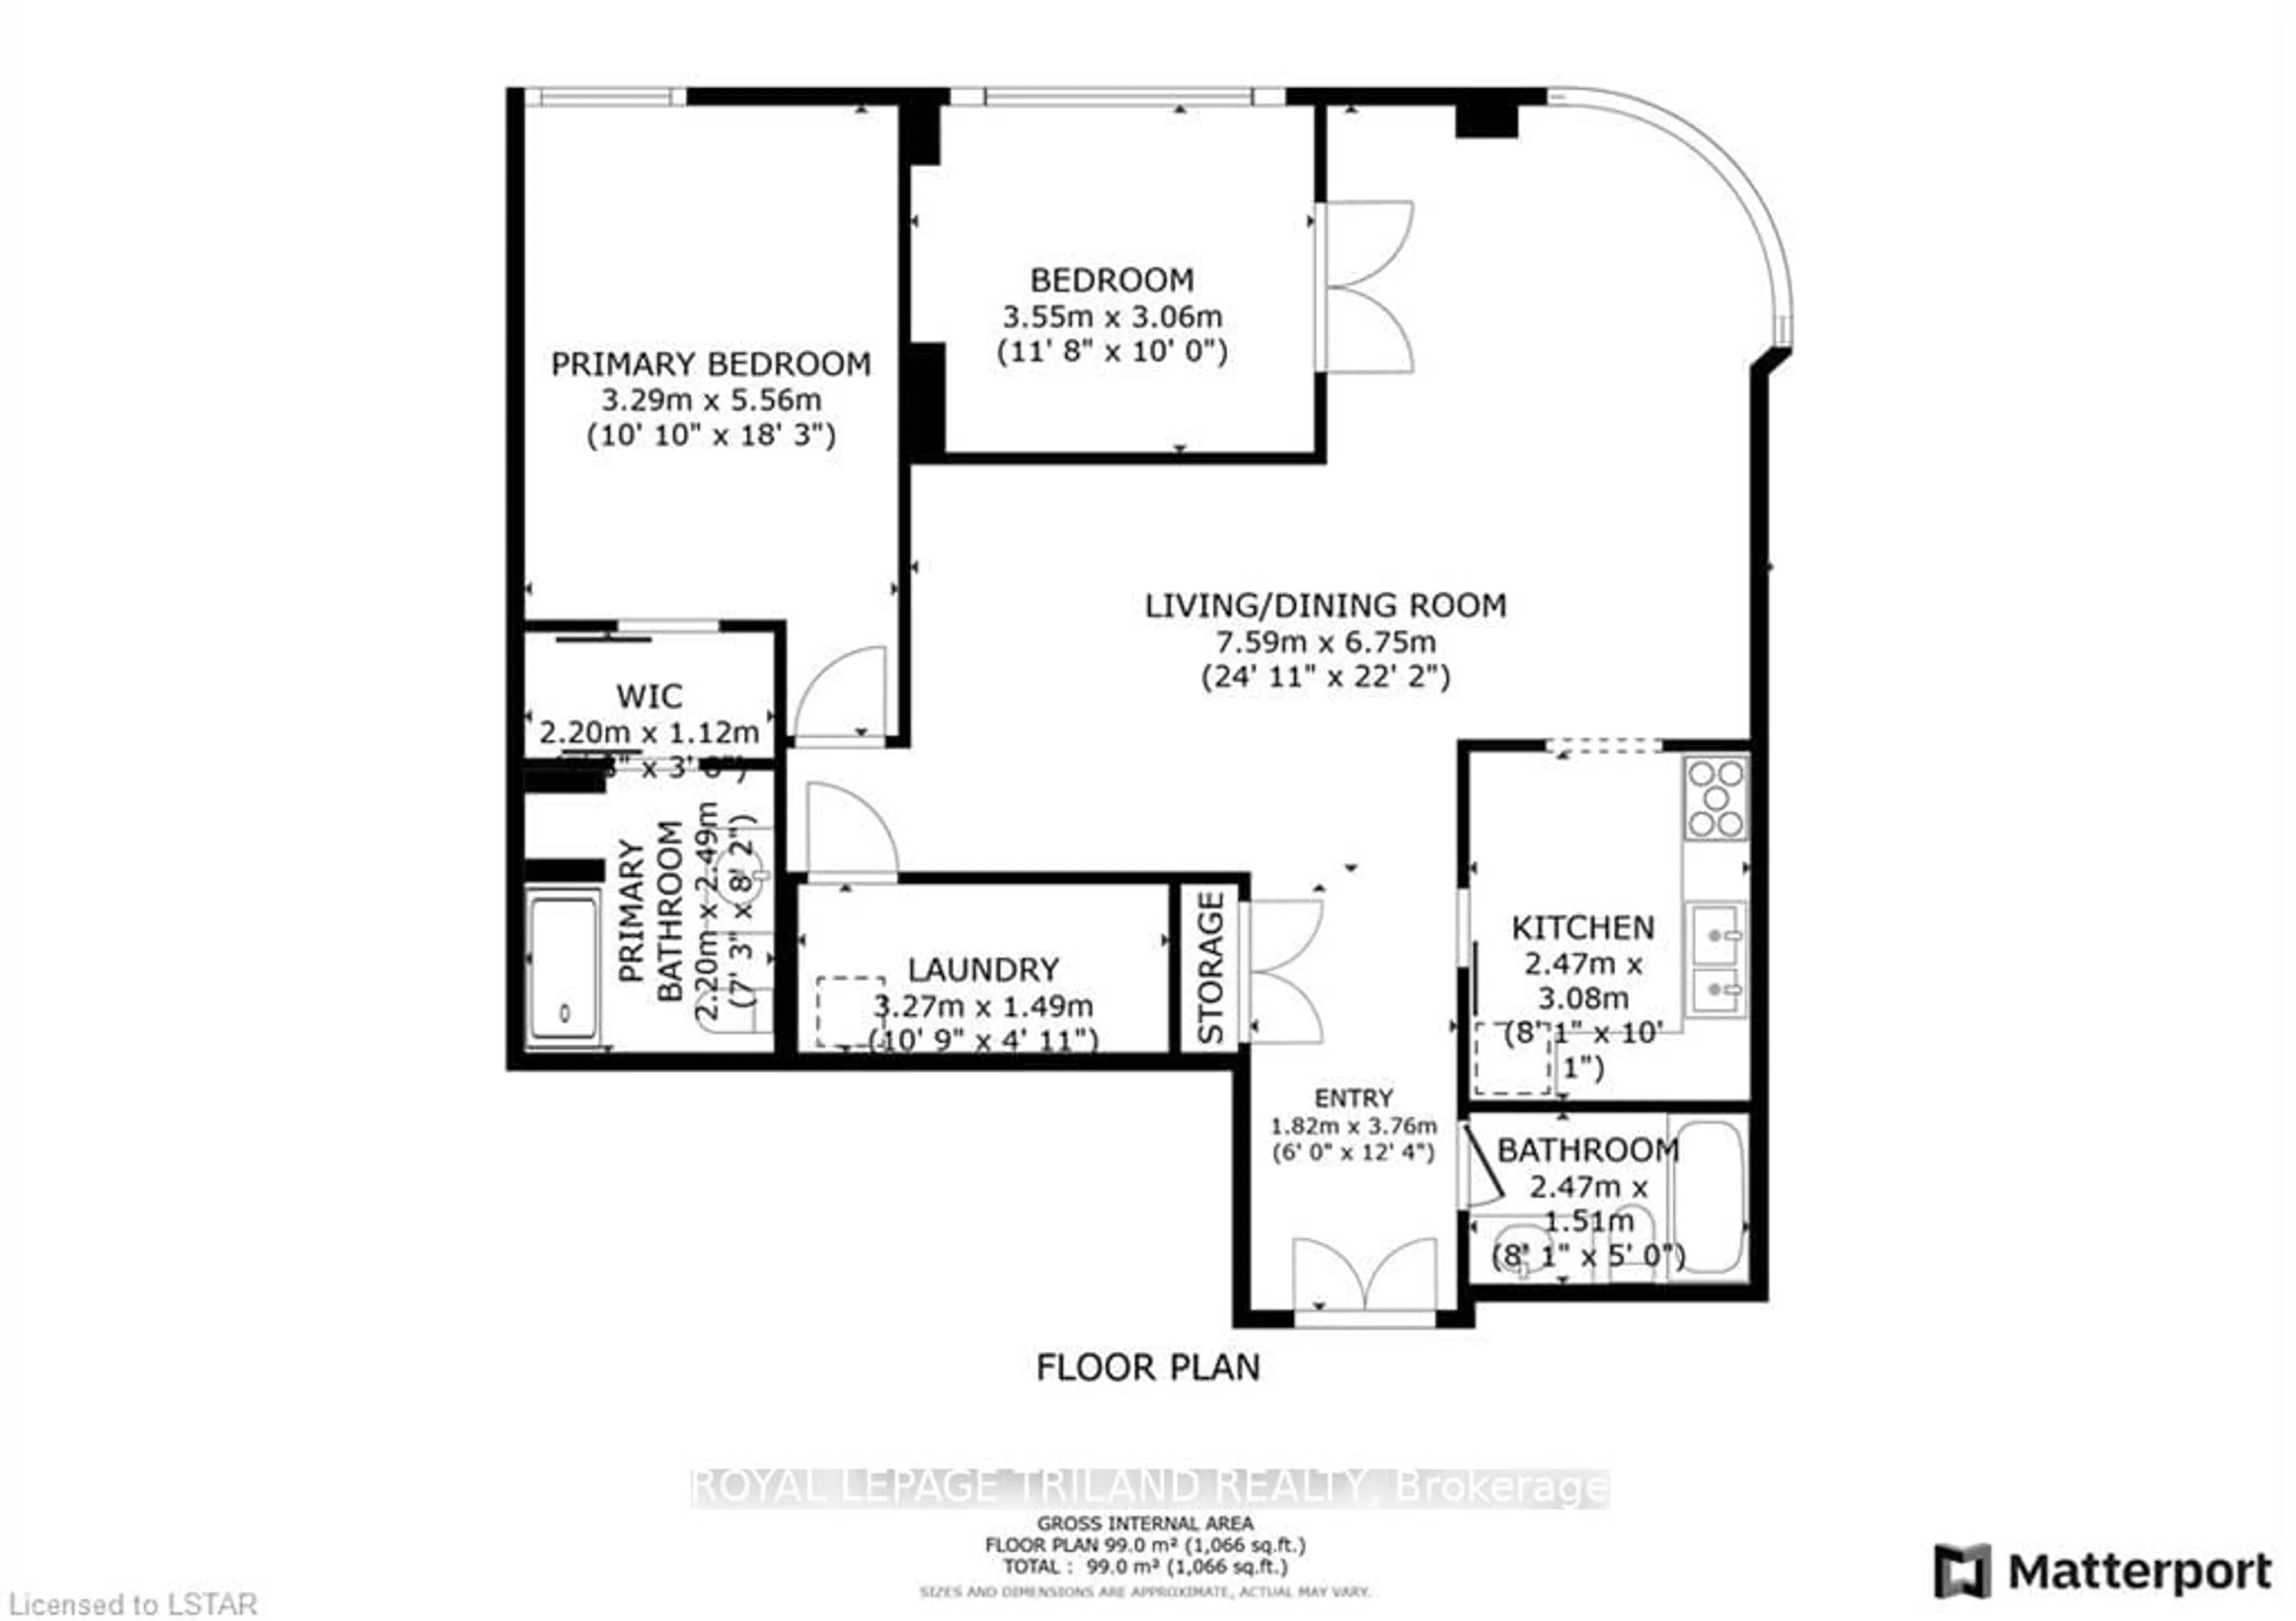 Floor plan for 7 PICTON St #902, London Ontario N6B 3N7